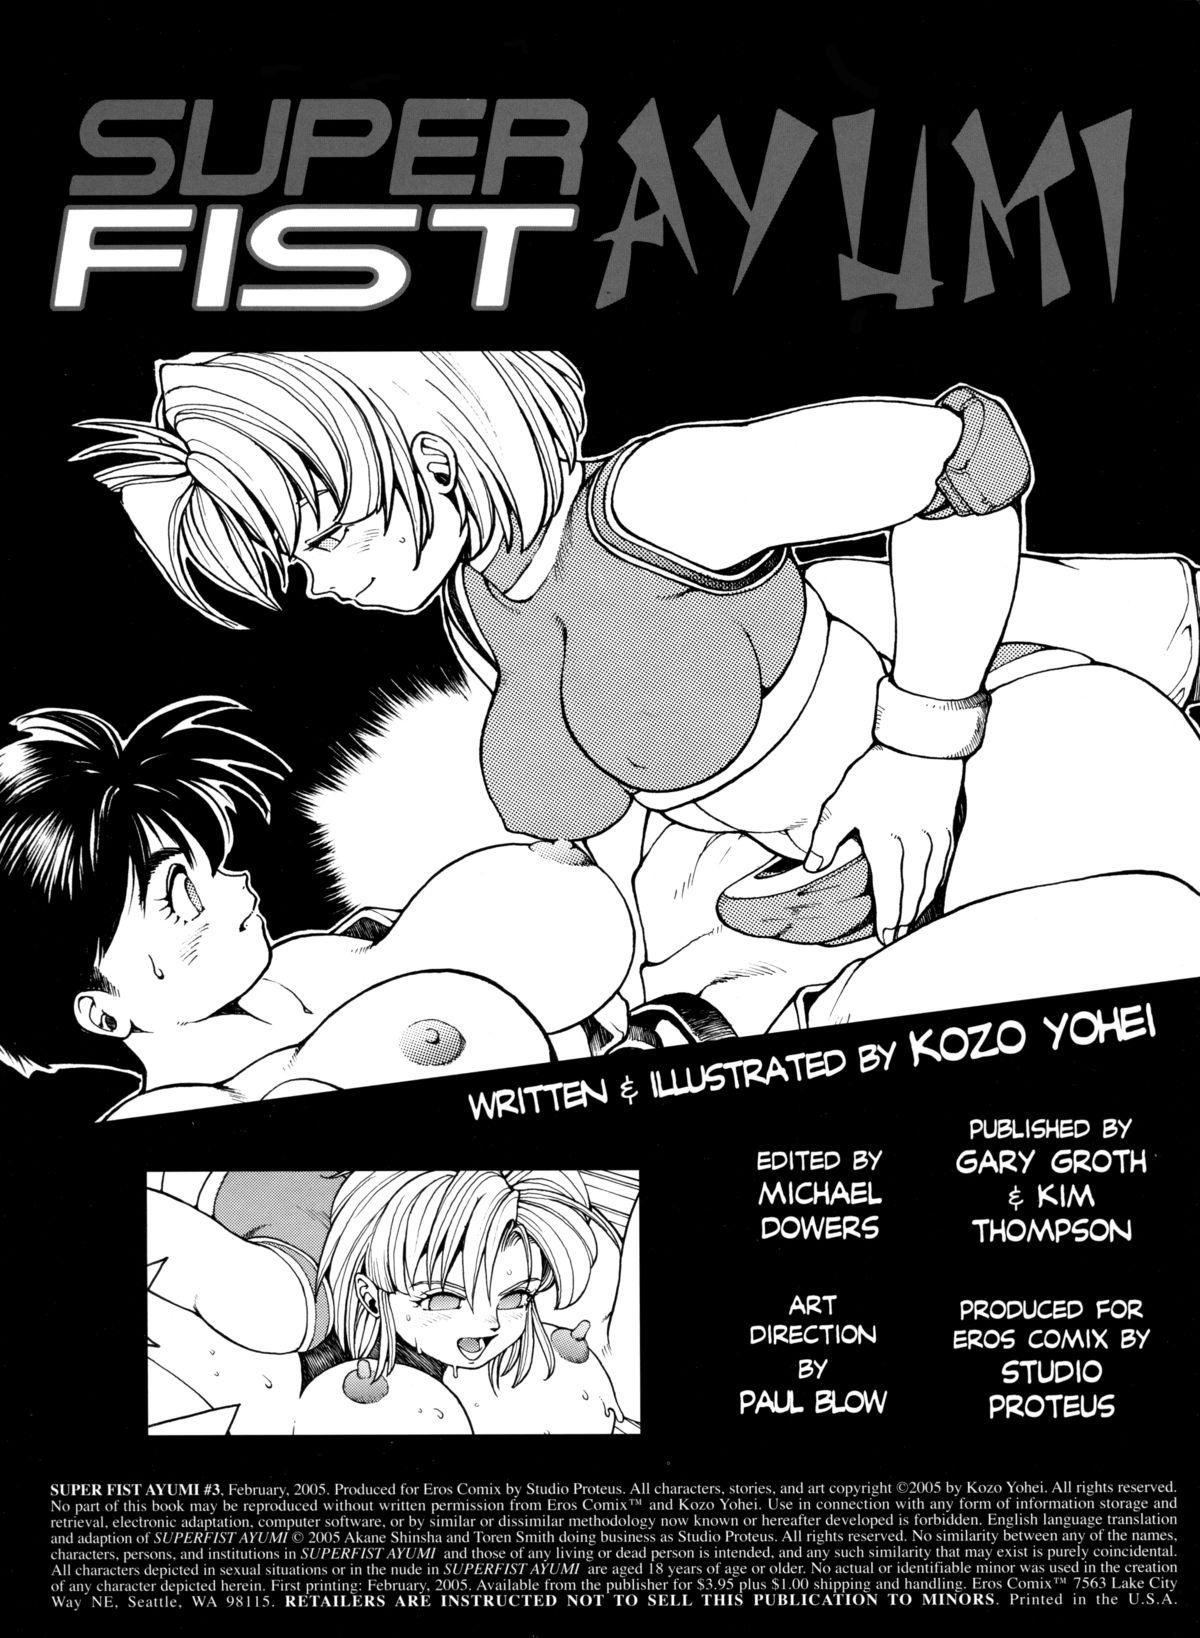 Girlfriend Superfist Ayumi 3 Reversecowgirl - Page 2